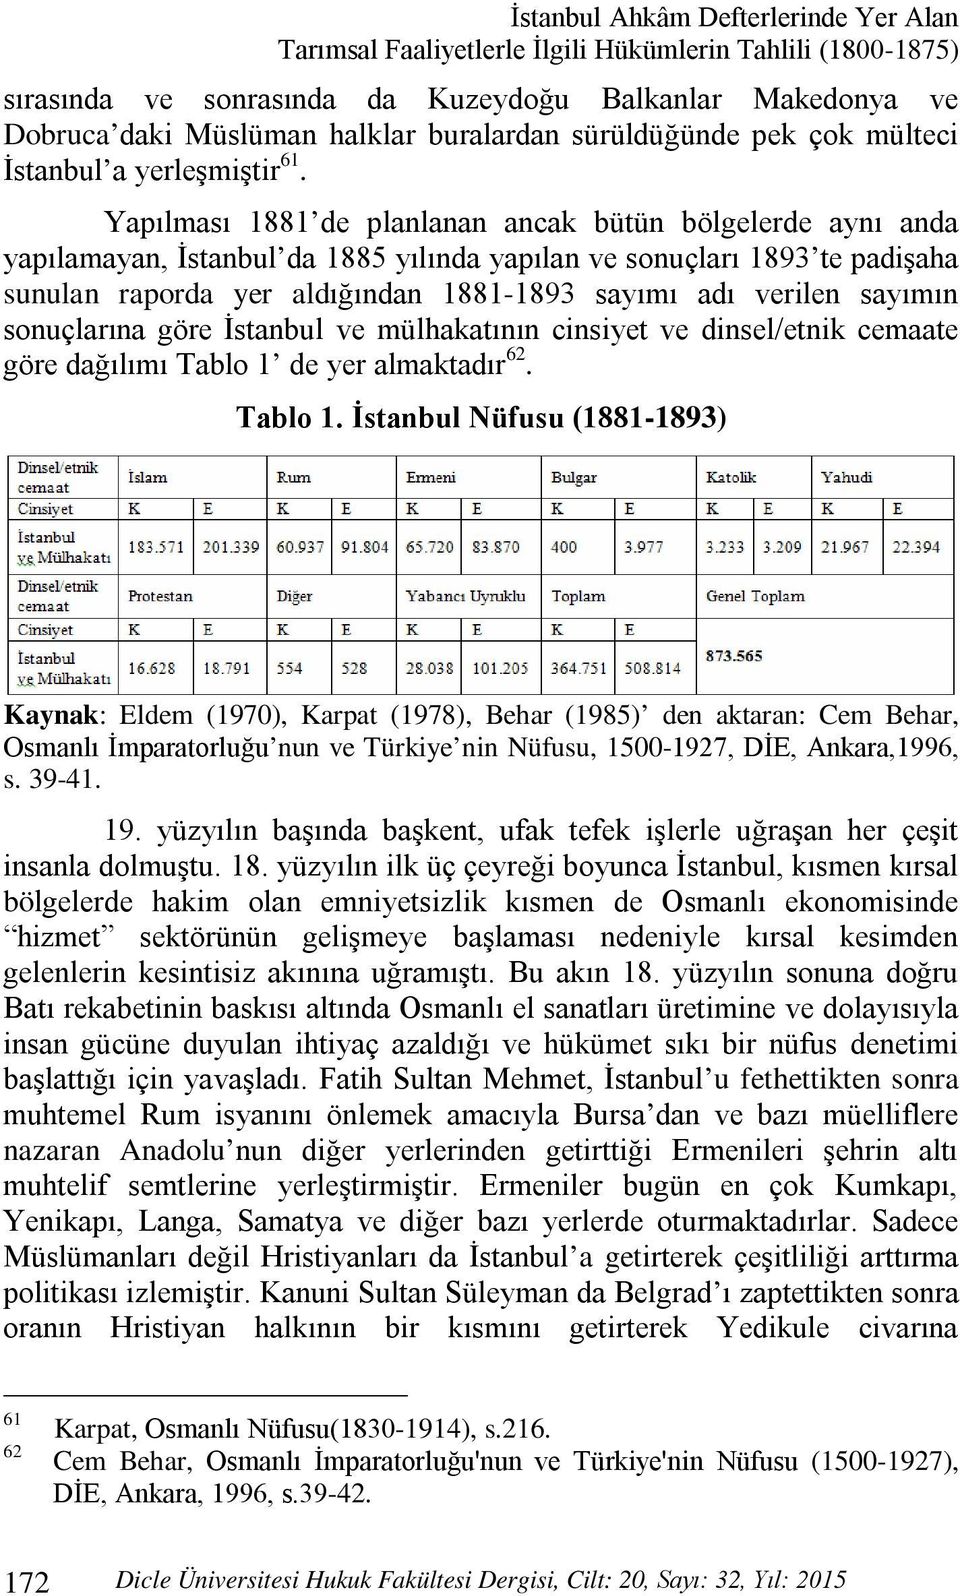 Yapılması 1881 de planlanan ancak bütün bölgelerde aynı anda yapılamayan, İstanbul da 1885 yılında yapılan ve sonuçları 1893 te padişaha sunulan raporda yer aldığından 1881-1893 sayımı adı verilen